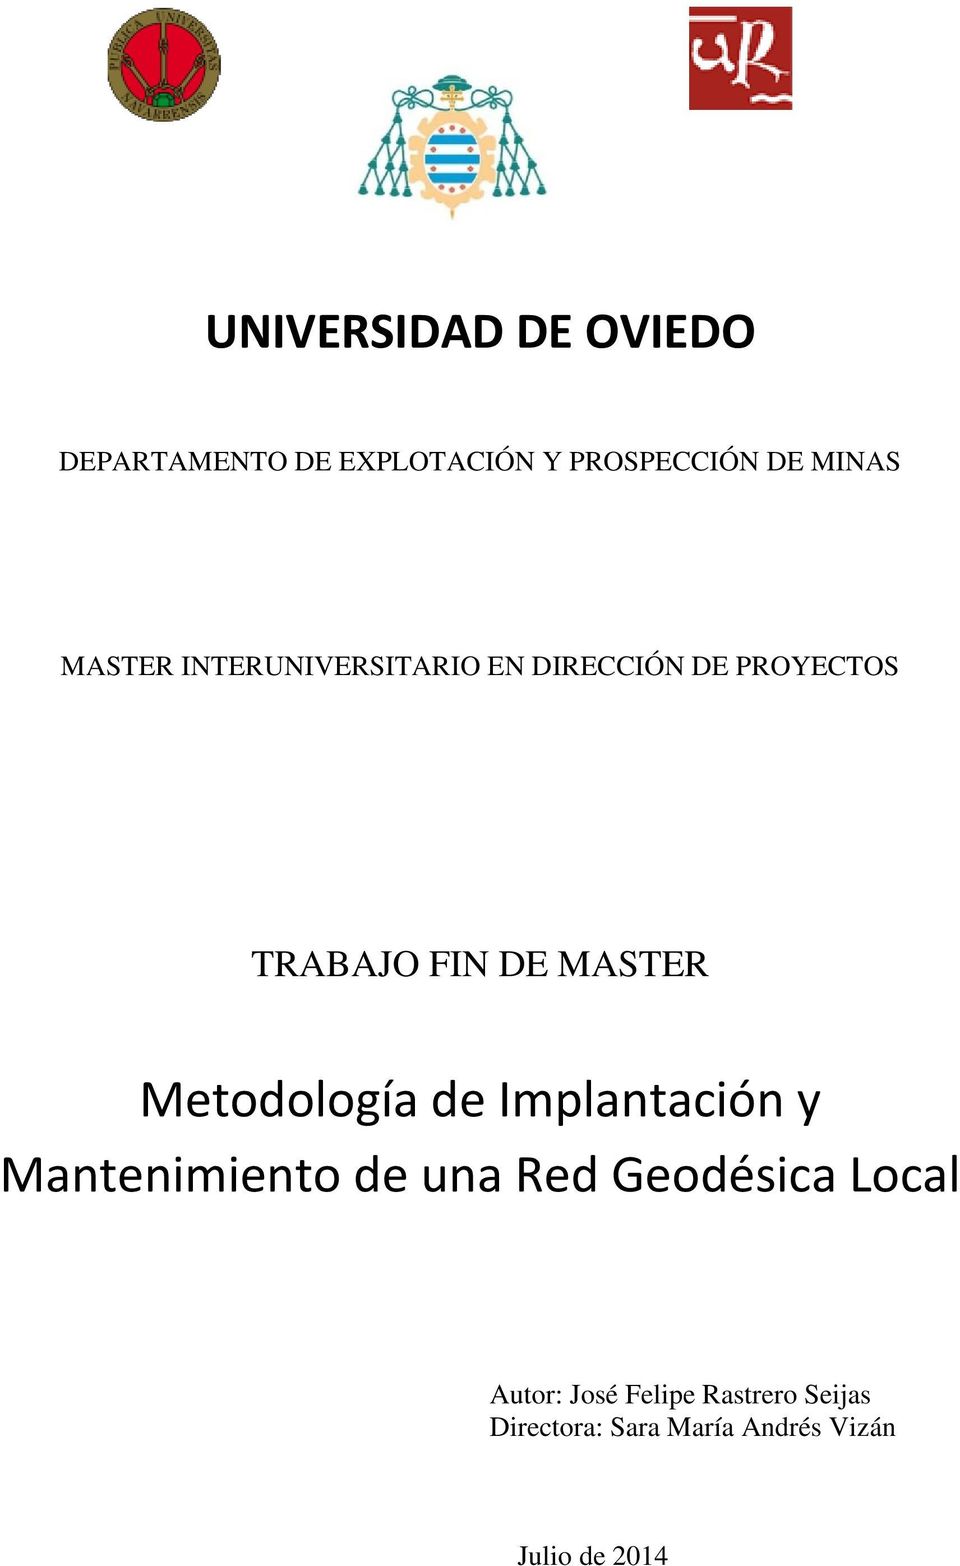 Metodología de Implantación y Mantenimiento de una Red Geodésica Local